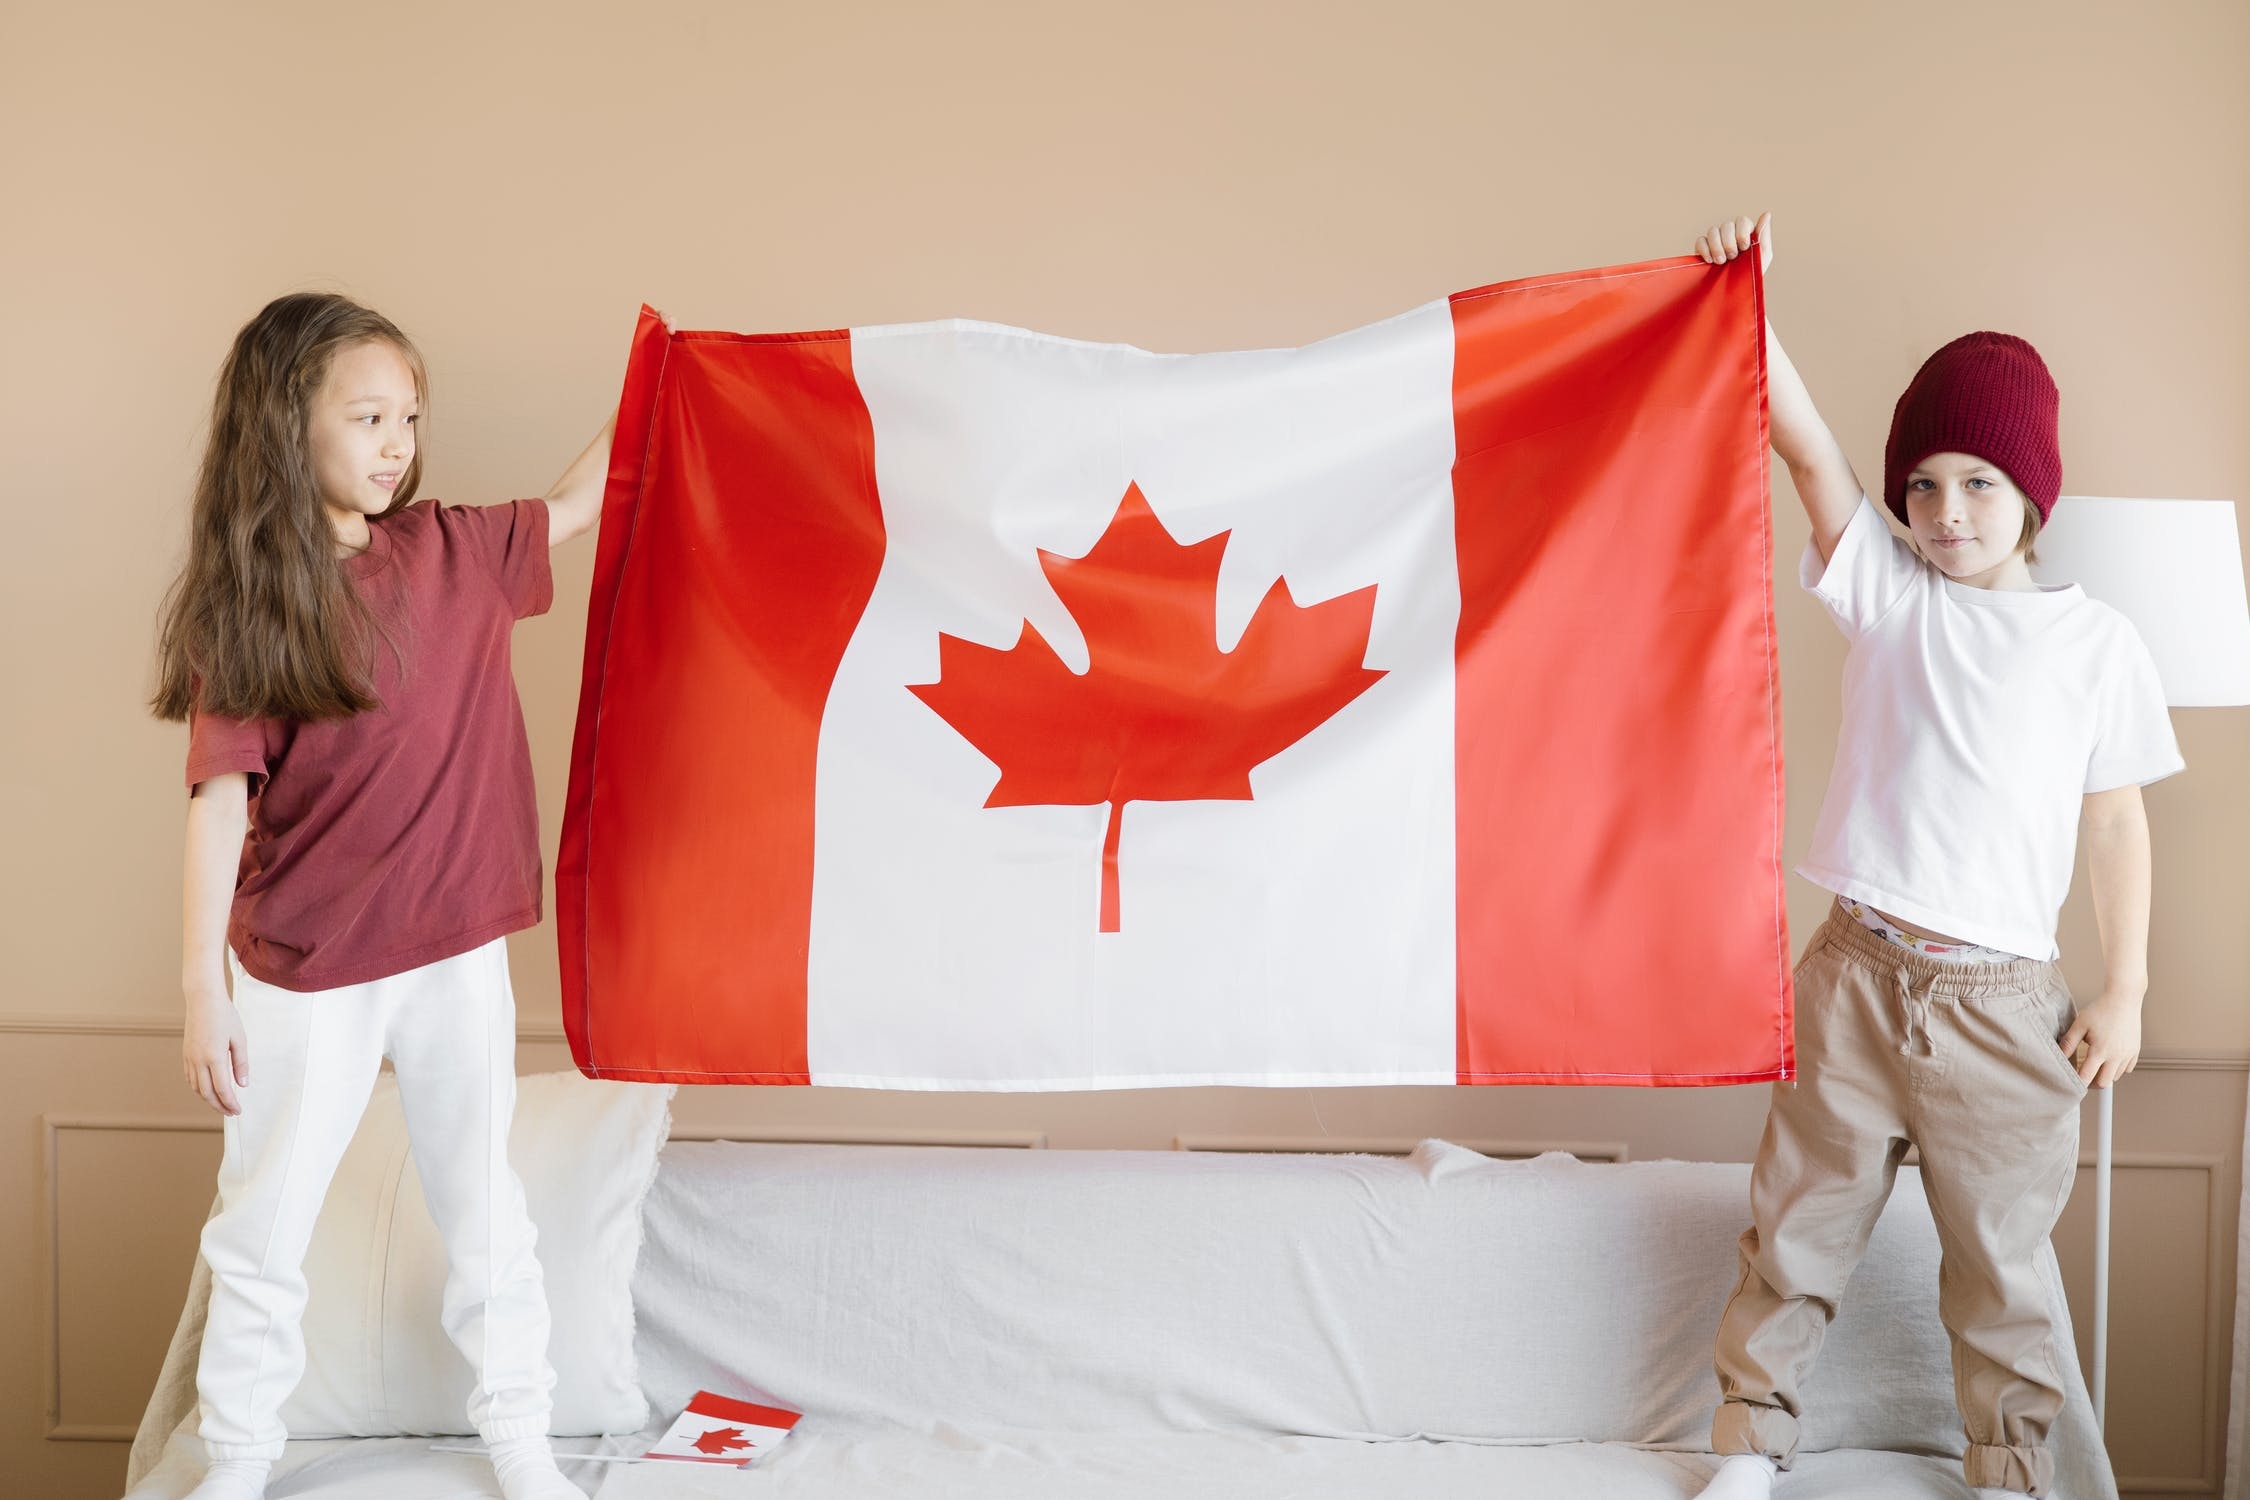 加拿大移民部加速审批国内申请者 或拖延其他类别移民申请 – 加拿大多伦多新飞扬留学